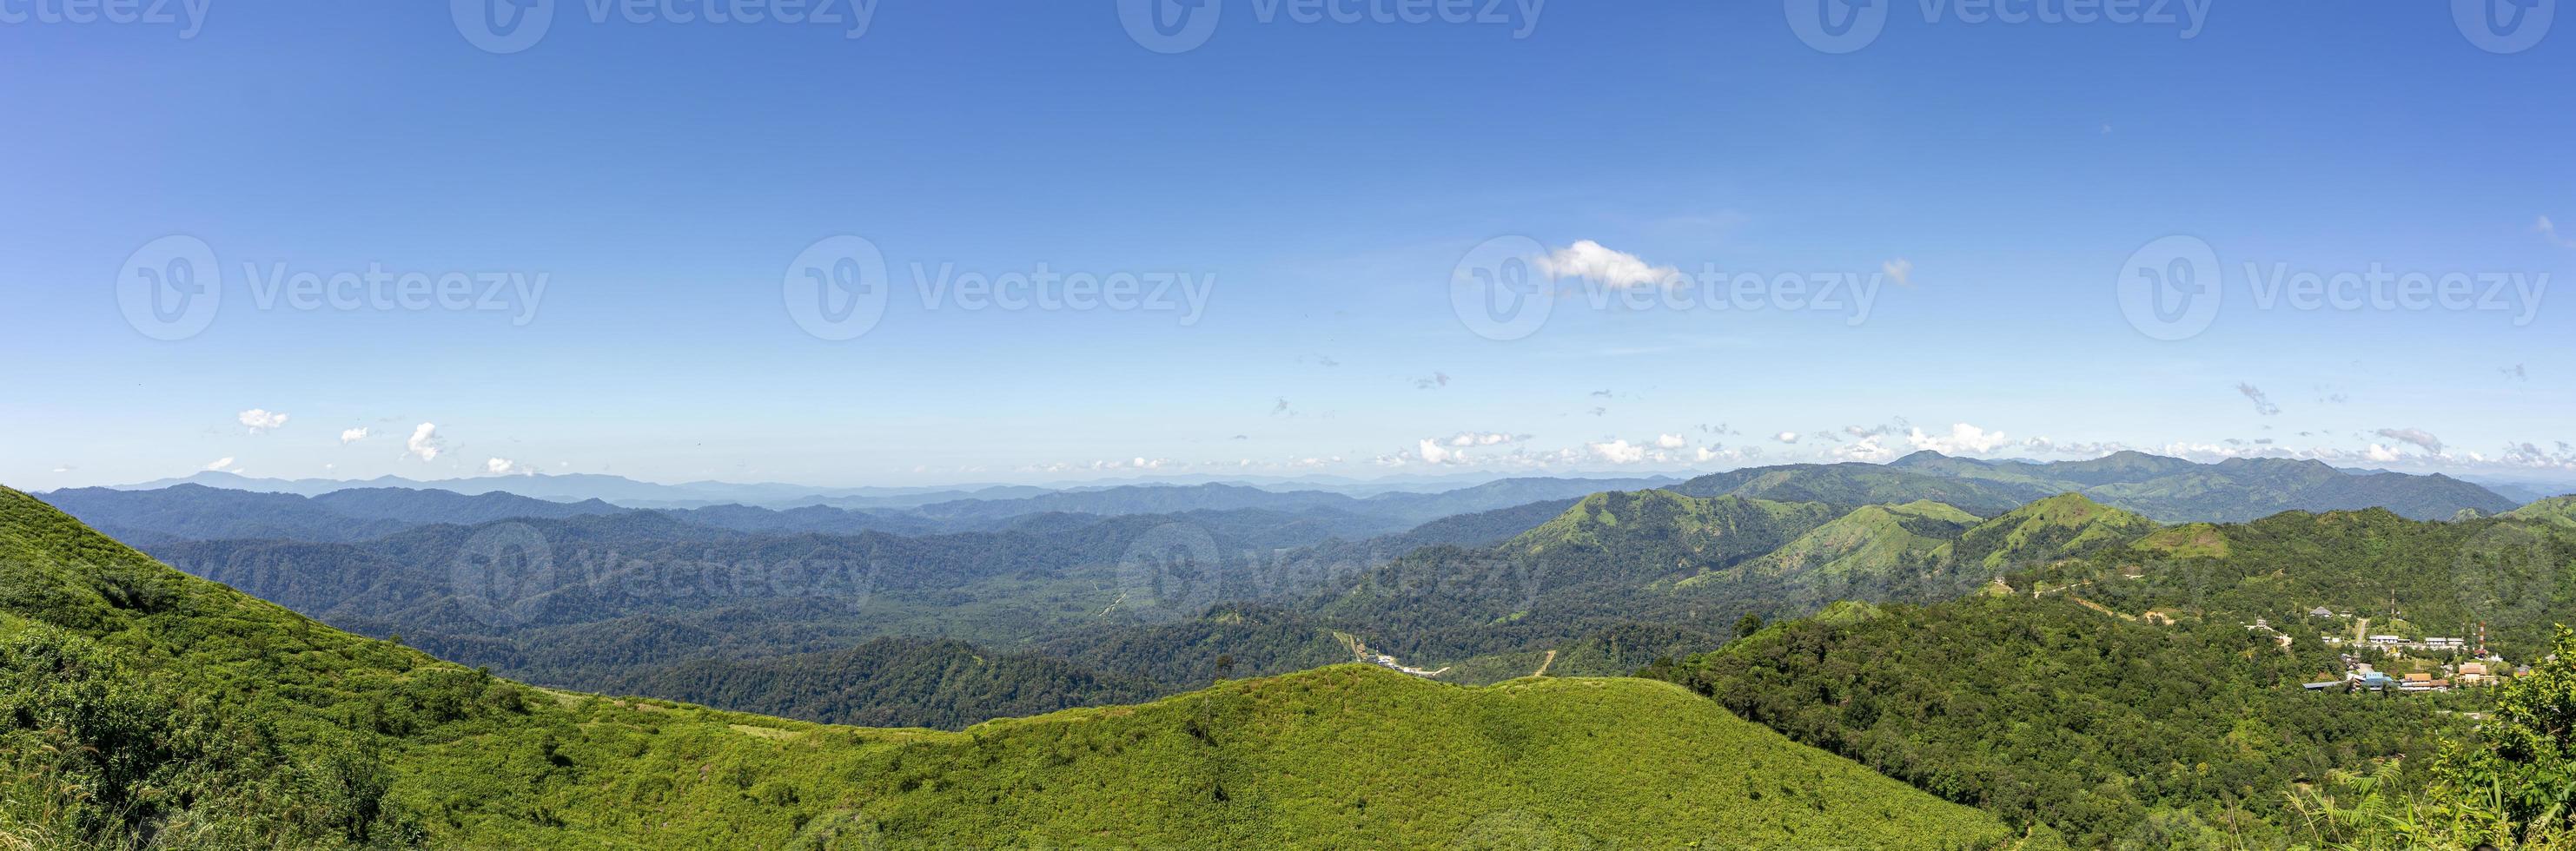 panorama, el paisaje en el mirador de la tarde. complejo montañoso, cielo azul claro. mirador de la mina pilok, kanchanaburi, tailandia foto